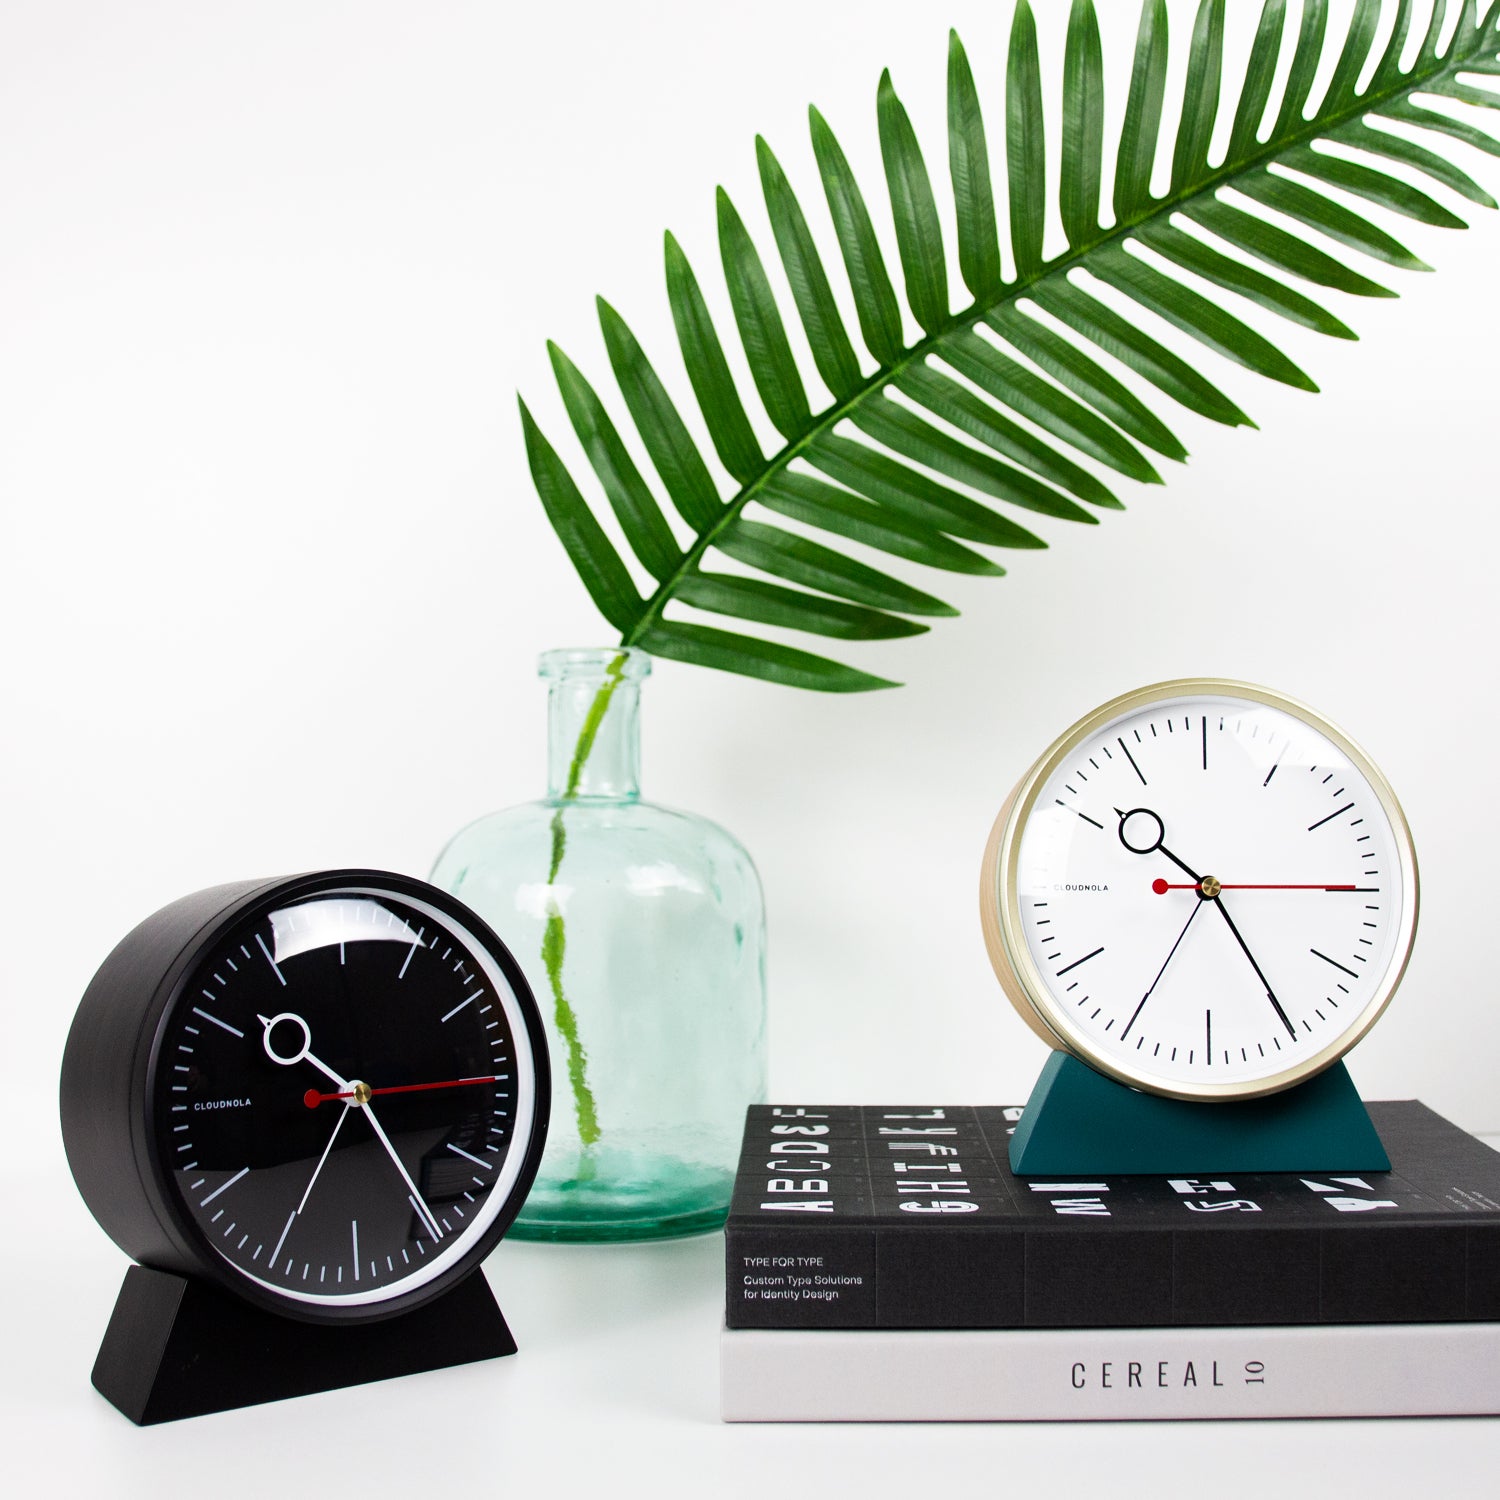 Horología: El diseño detrás de los relojes y sus mecanismos - Blog